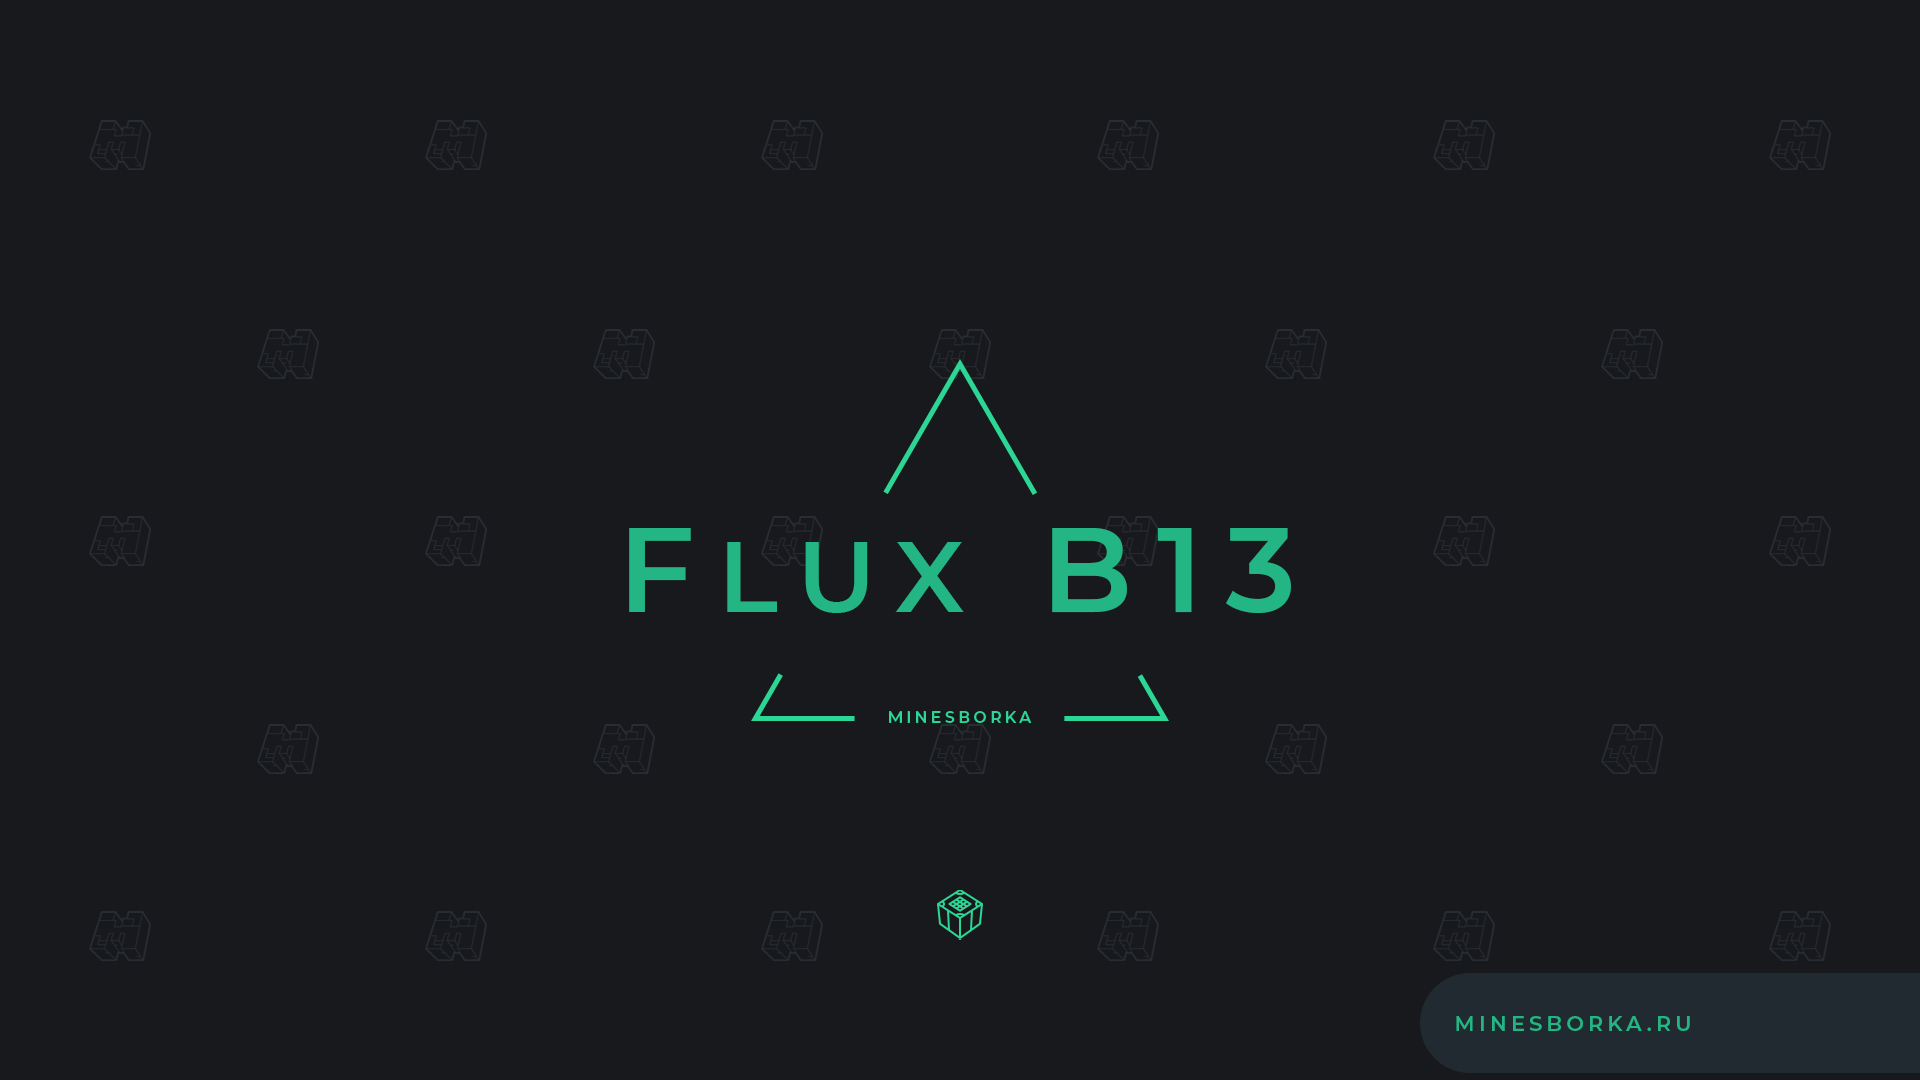 Скачать чит Flux b13 1.8.8 для Minecraft | Киллаура, полет, AimBot, Nuker и т.д.